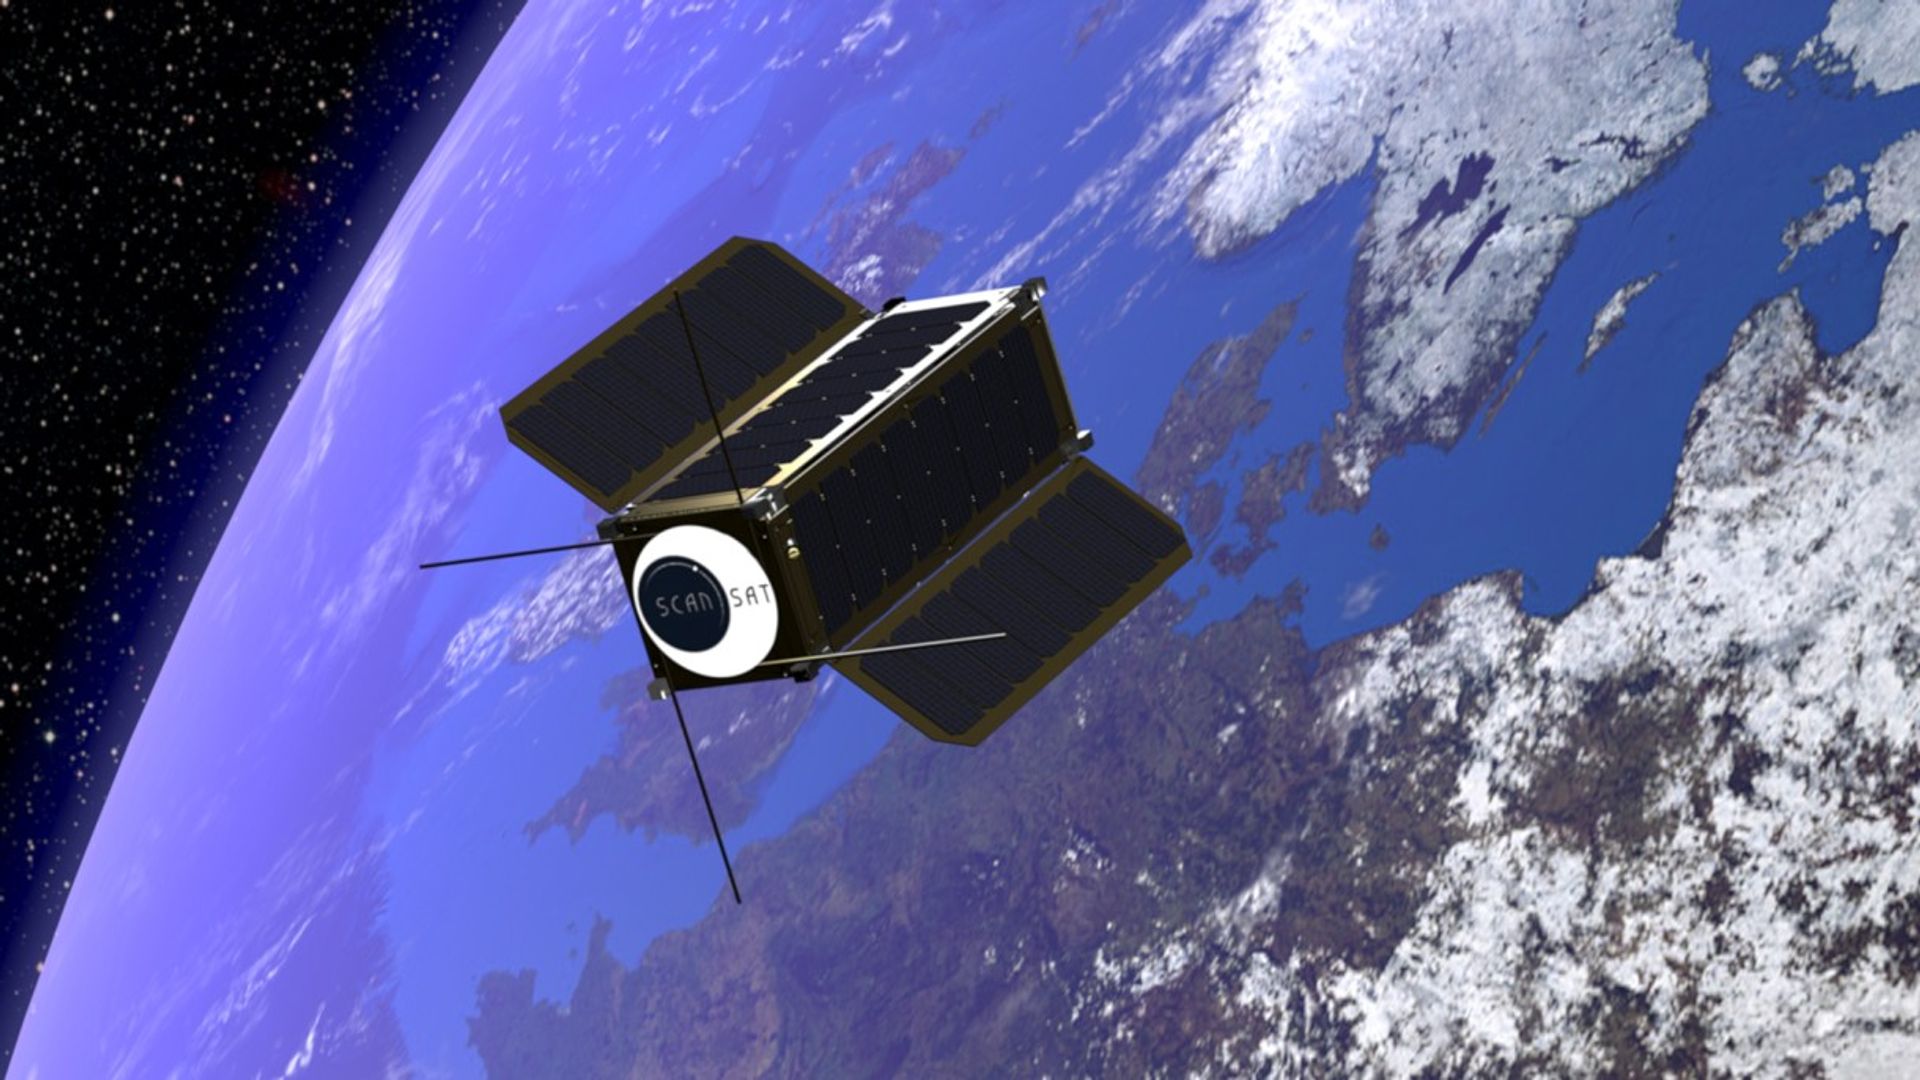  W WPT powstaje ScanSAT – pierwszy polski satelita obserwacyjny o wysokiej rozdzielczości. Na orbitę ma trafić w 2020 roku